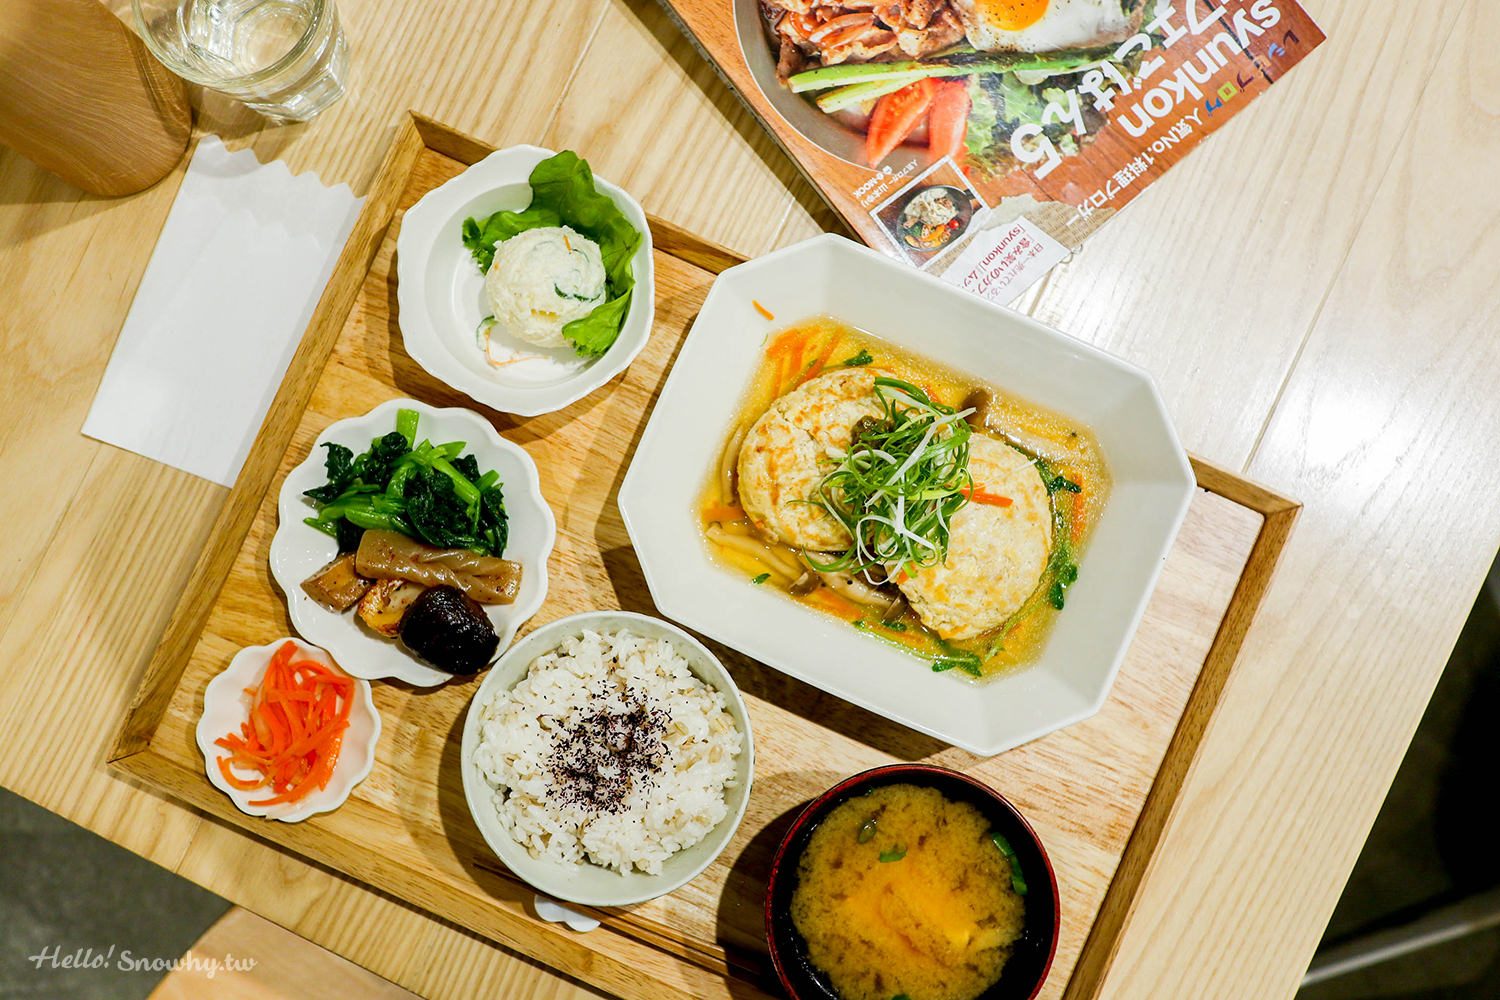 新竹美食,新竹火車站美食,柚子,Pomelo's Home,日式家庭料理,新竹下午茶,新竹日式料理